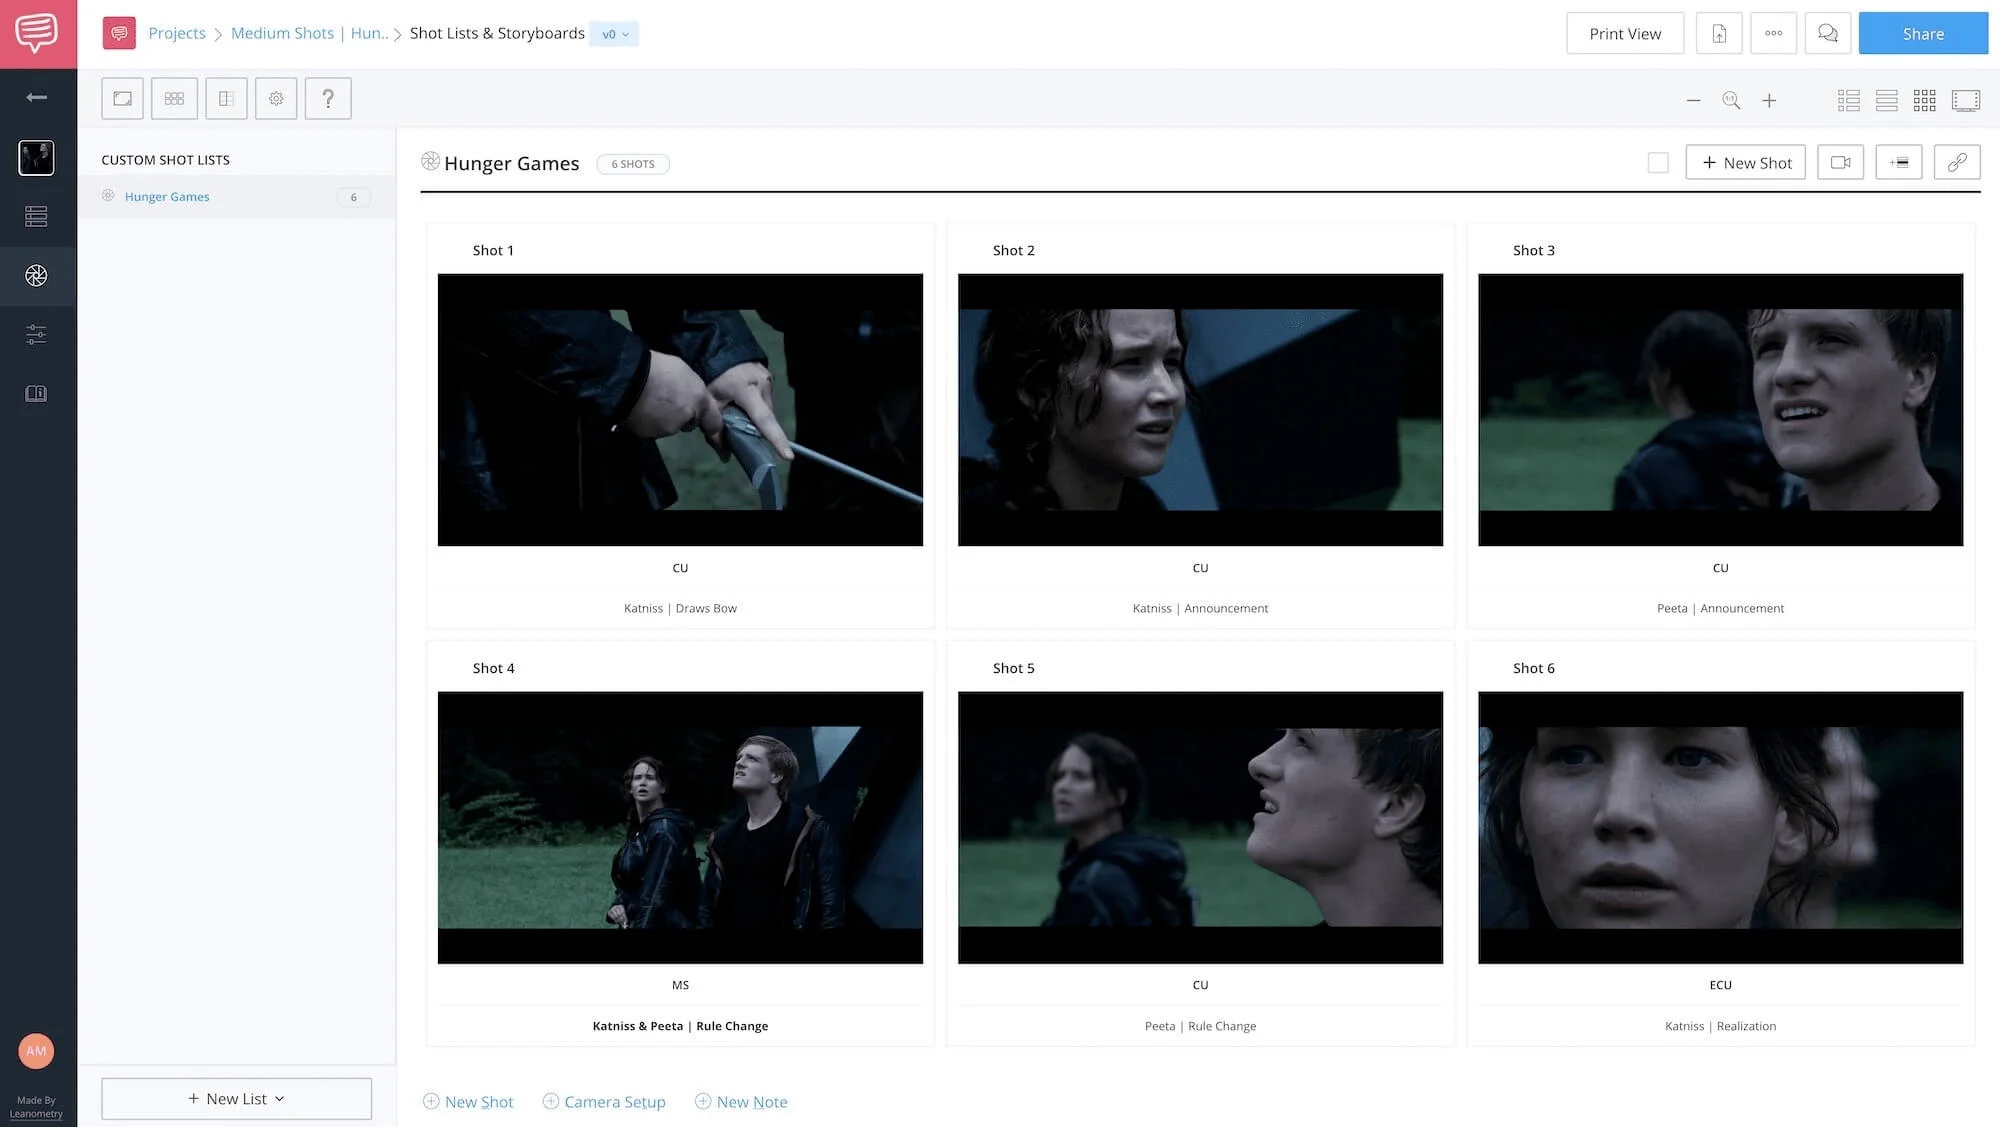 Medium Shot Examples - The Hunger Games - StudioBinder Online Shot Listing Software